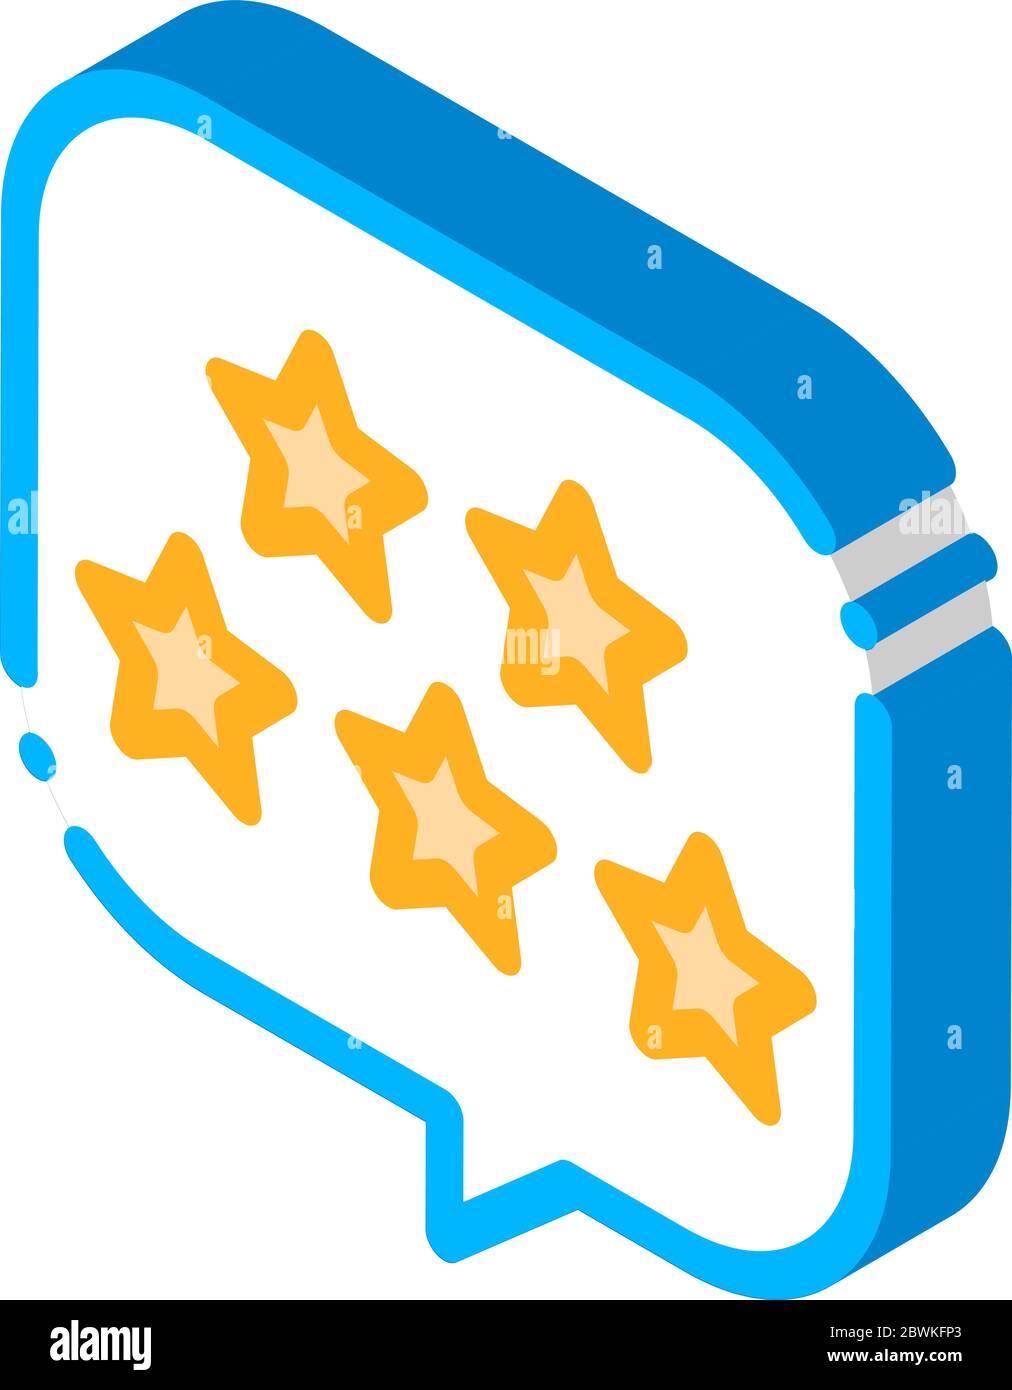 Cinque stelle in riquadro di testo immagine vettoriale con icona isometrica Illustrazione Vettoriale